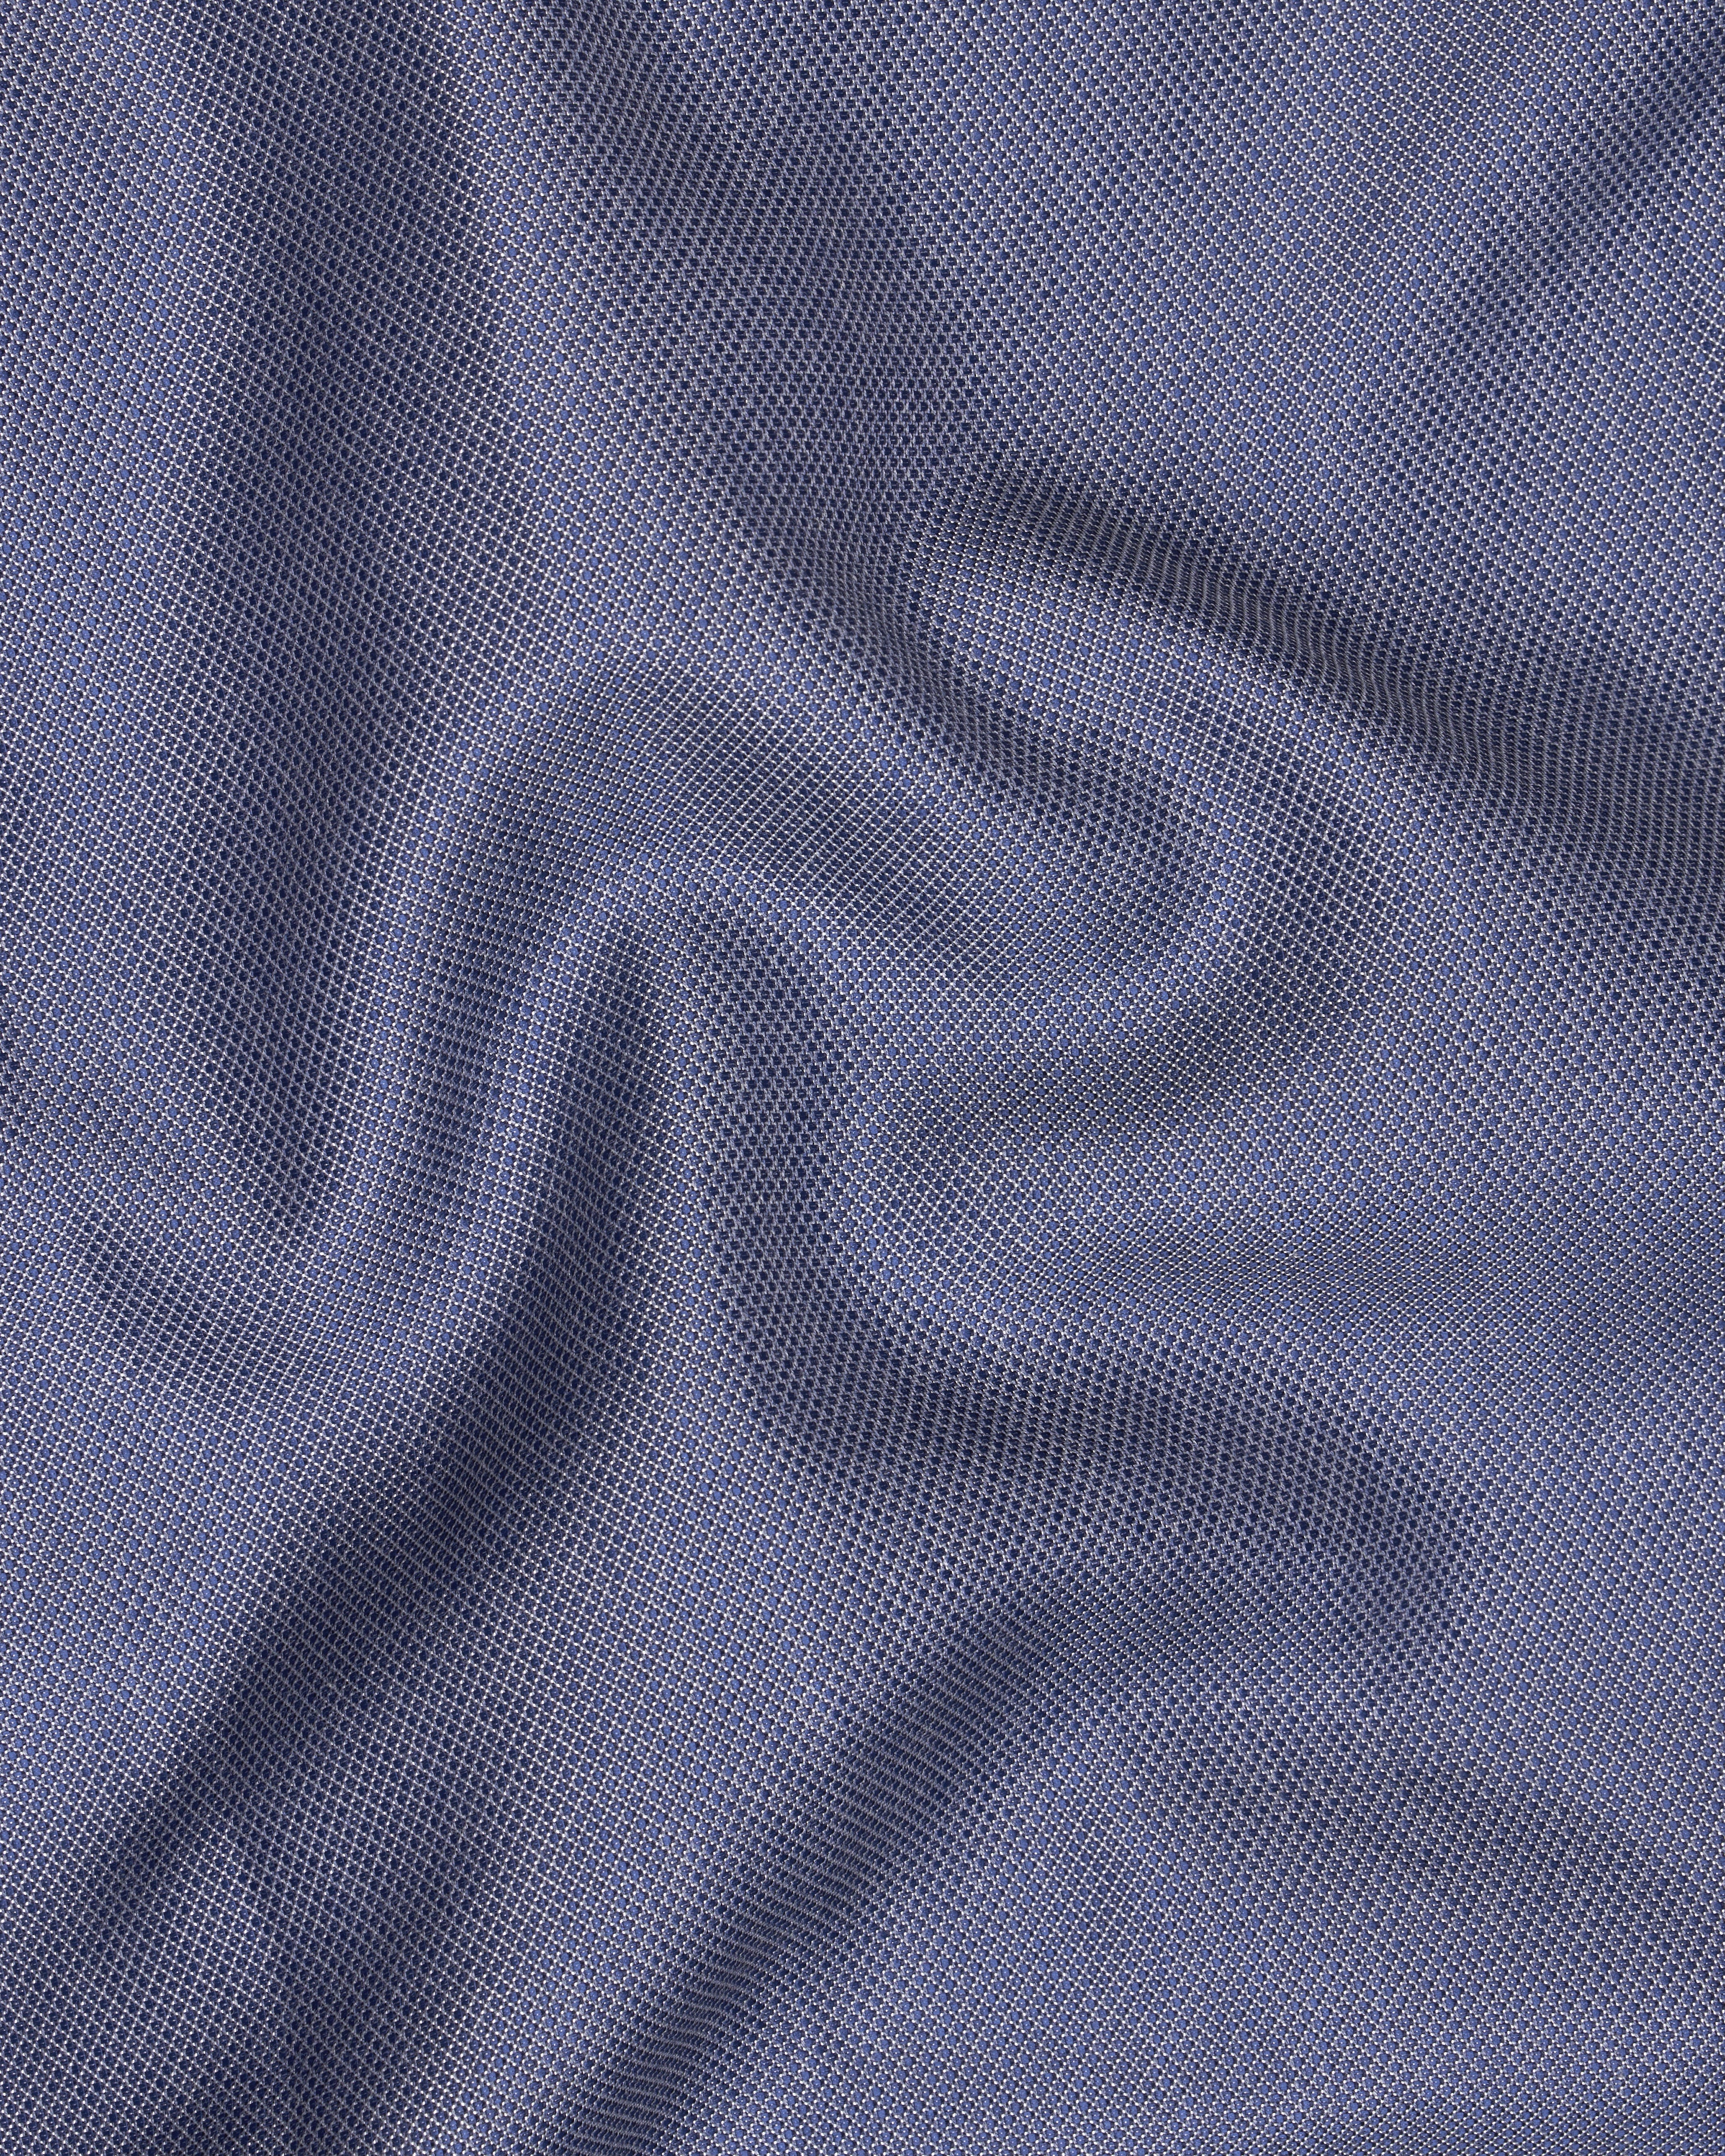 Dolphin Blue Textured Trouser T2613-28, T2613-30, T2613-32, T2613-34, T2613-36, T2613-38, T2613-40, T2613-42, T2613-44